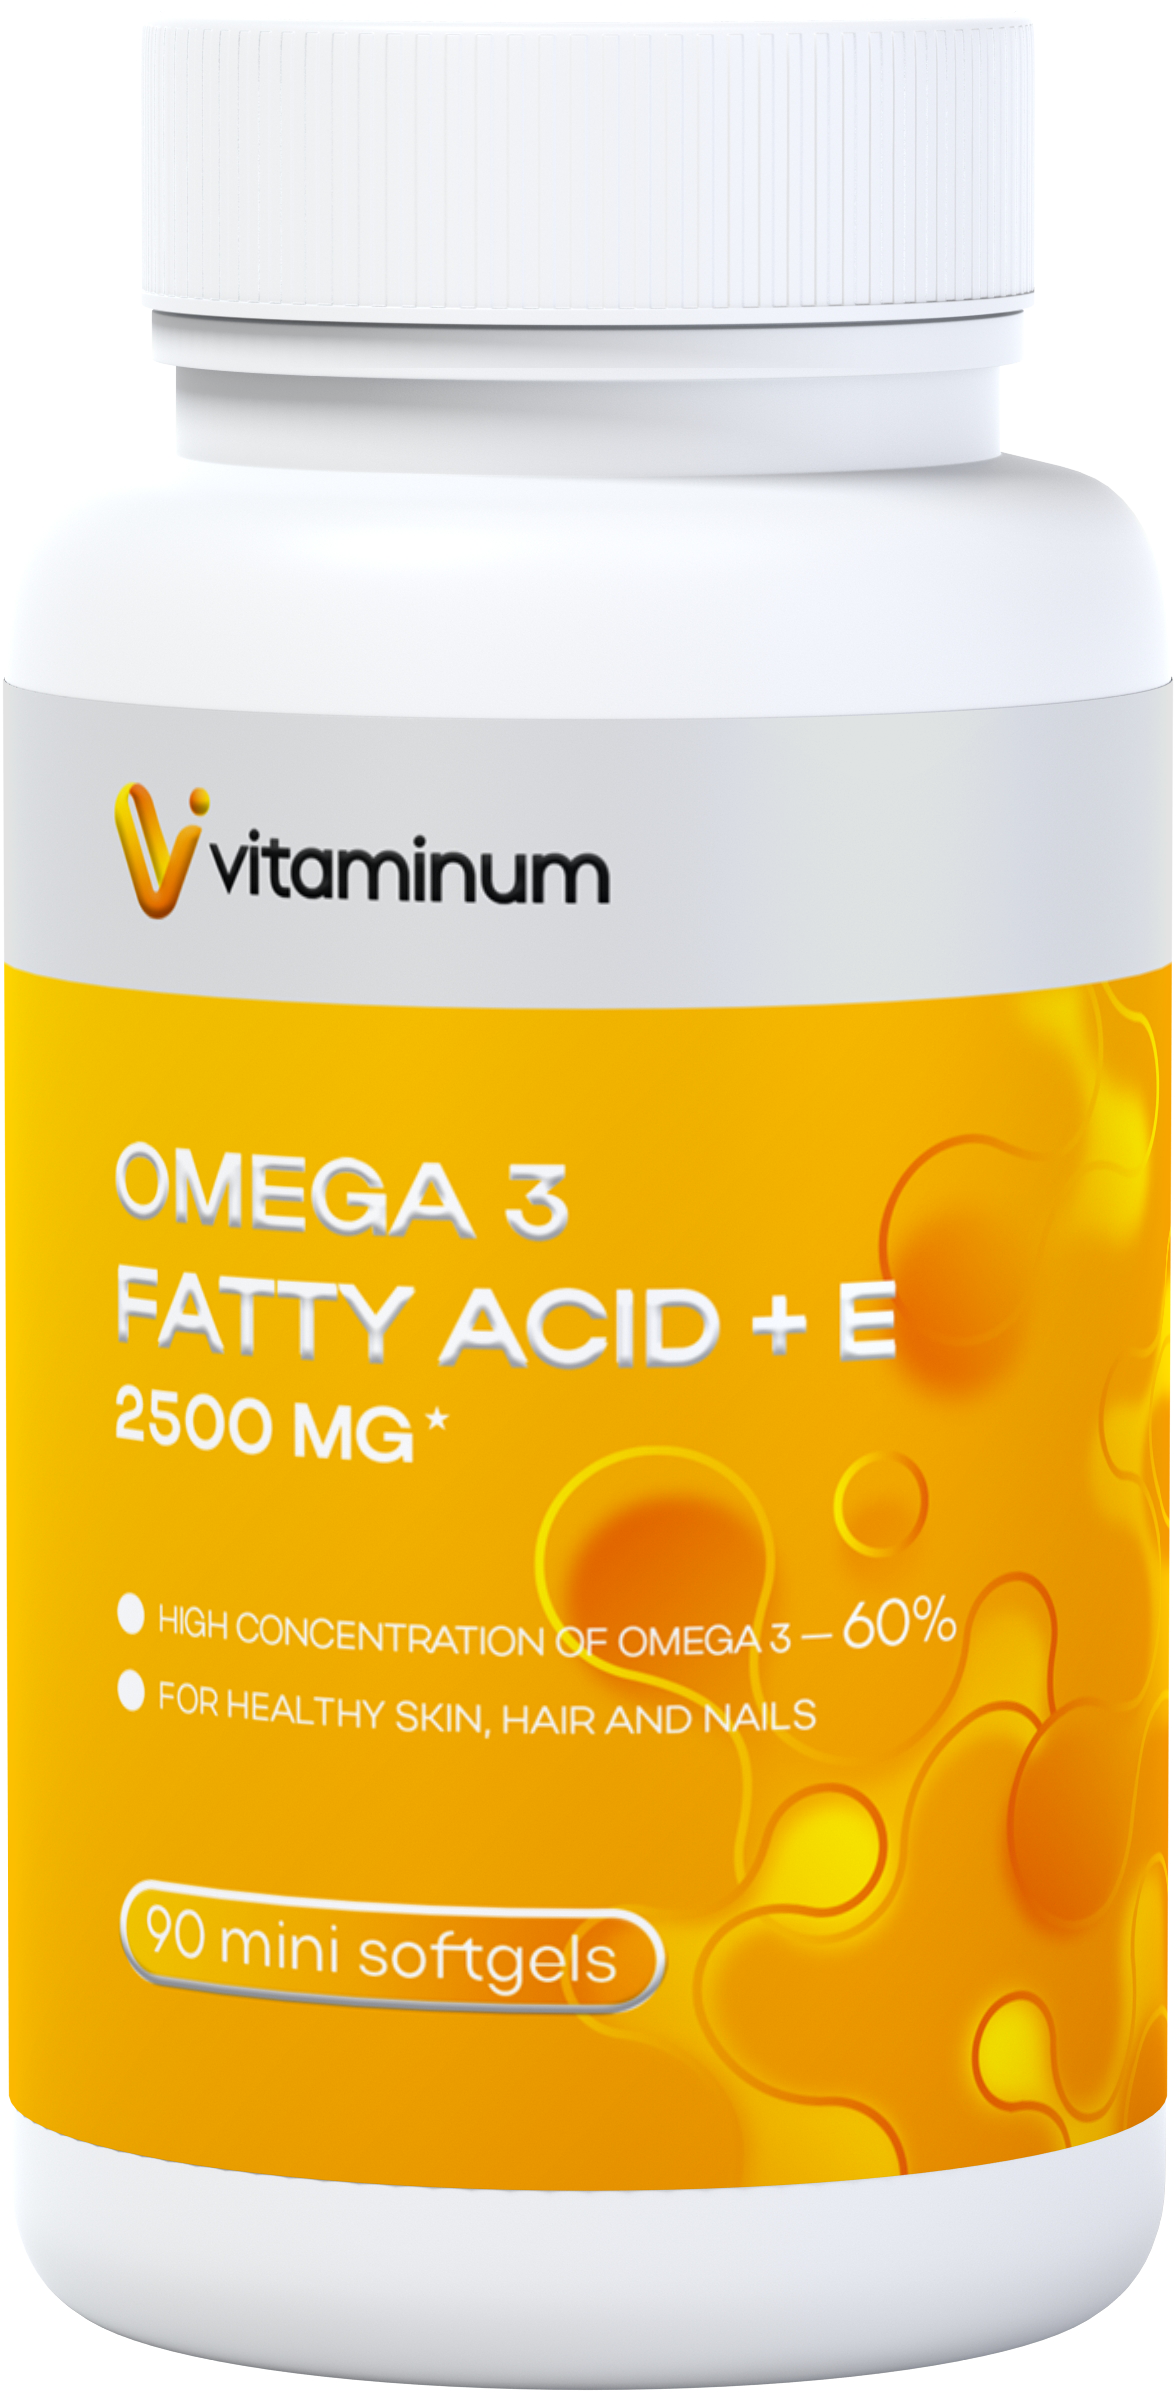  Vitaminum ОМЕГА 3 60% + витамин Е (2500 MG*) 90 капсул 700 мг   в Волгограде